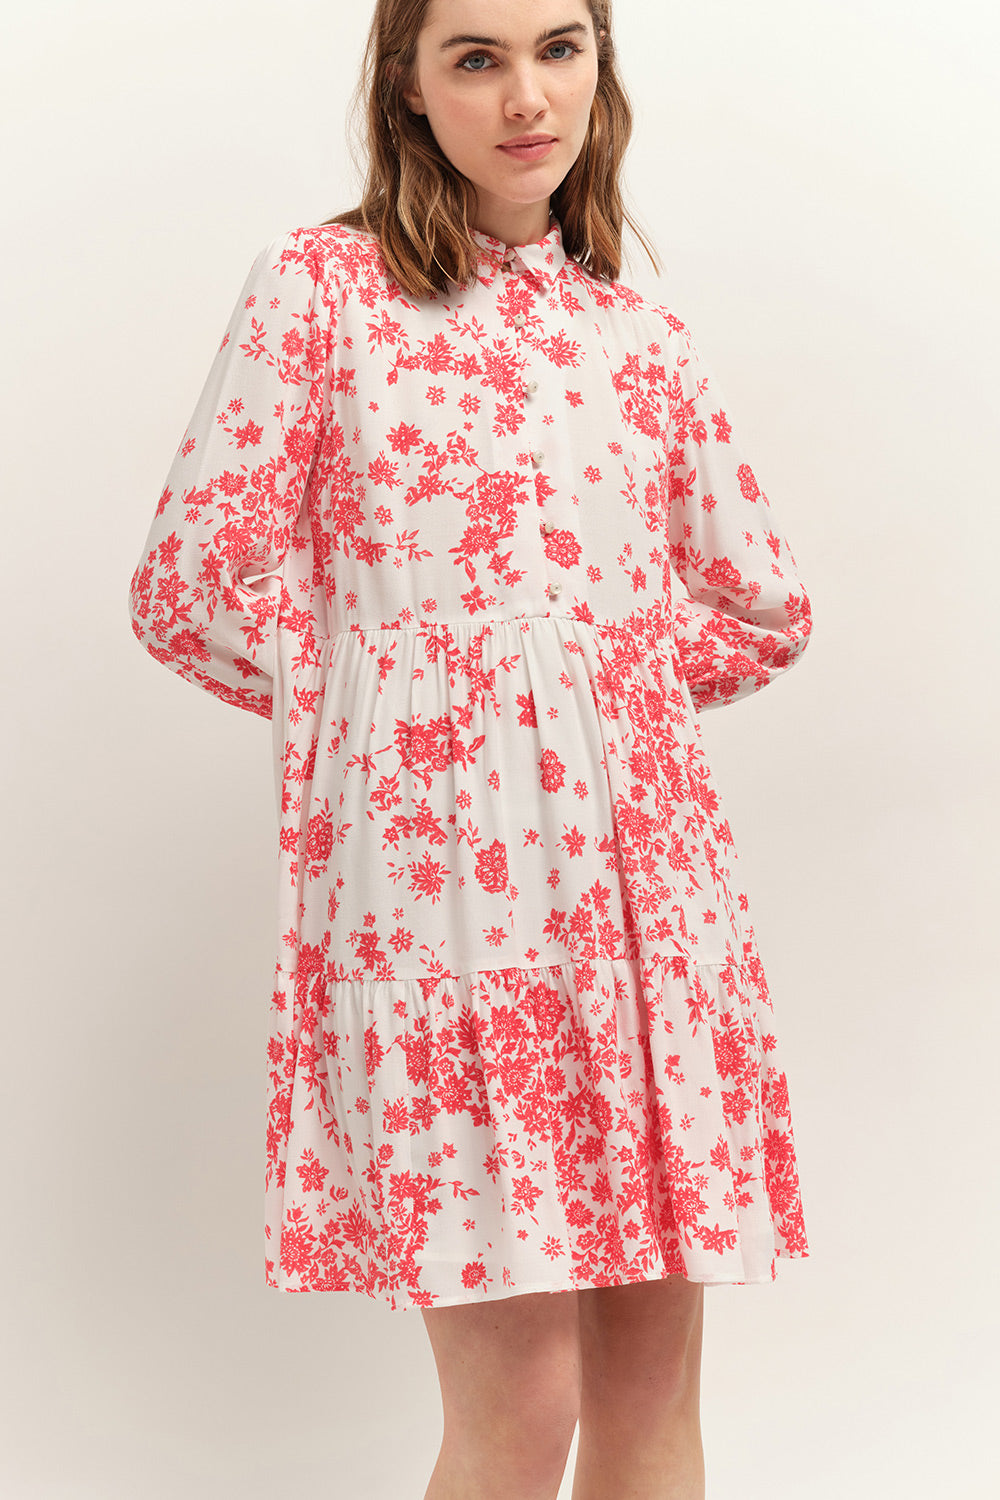 RICHTIE - Robe hibiscus Lenzing™ Ecovero™ à imprimé faïence bohème